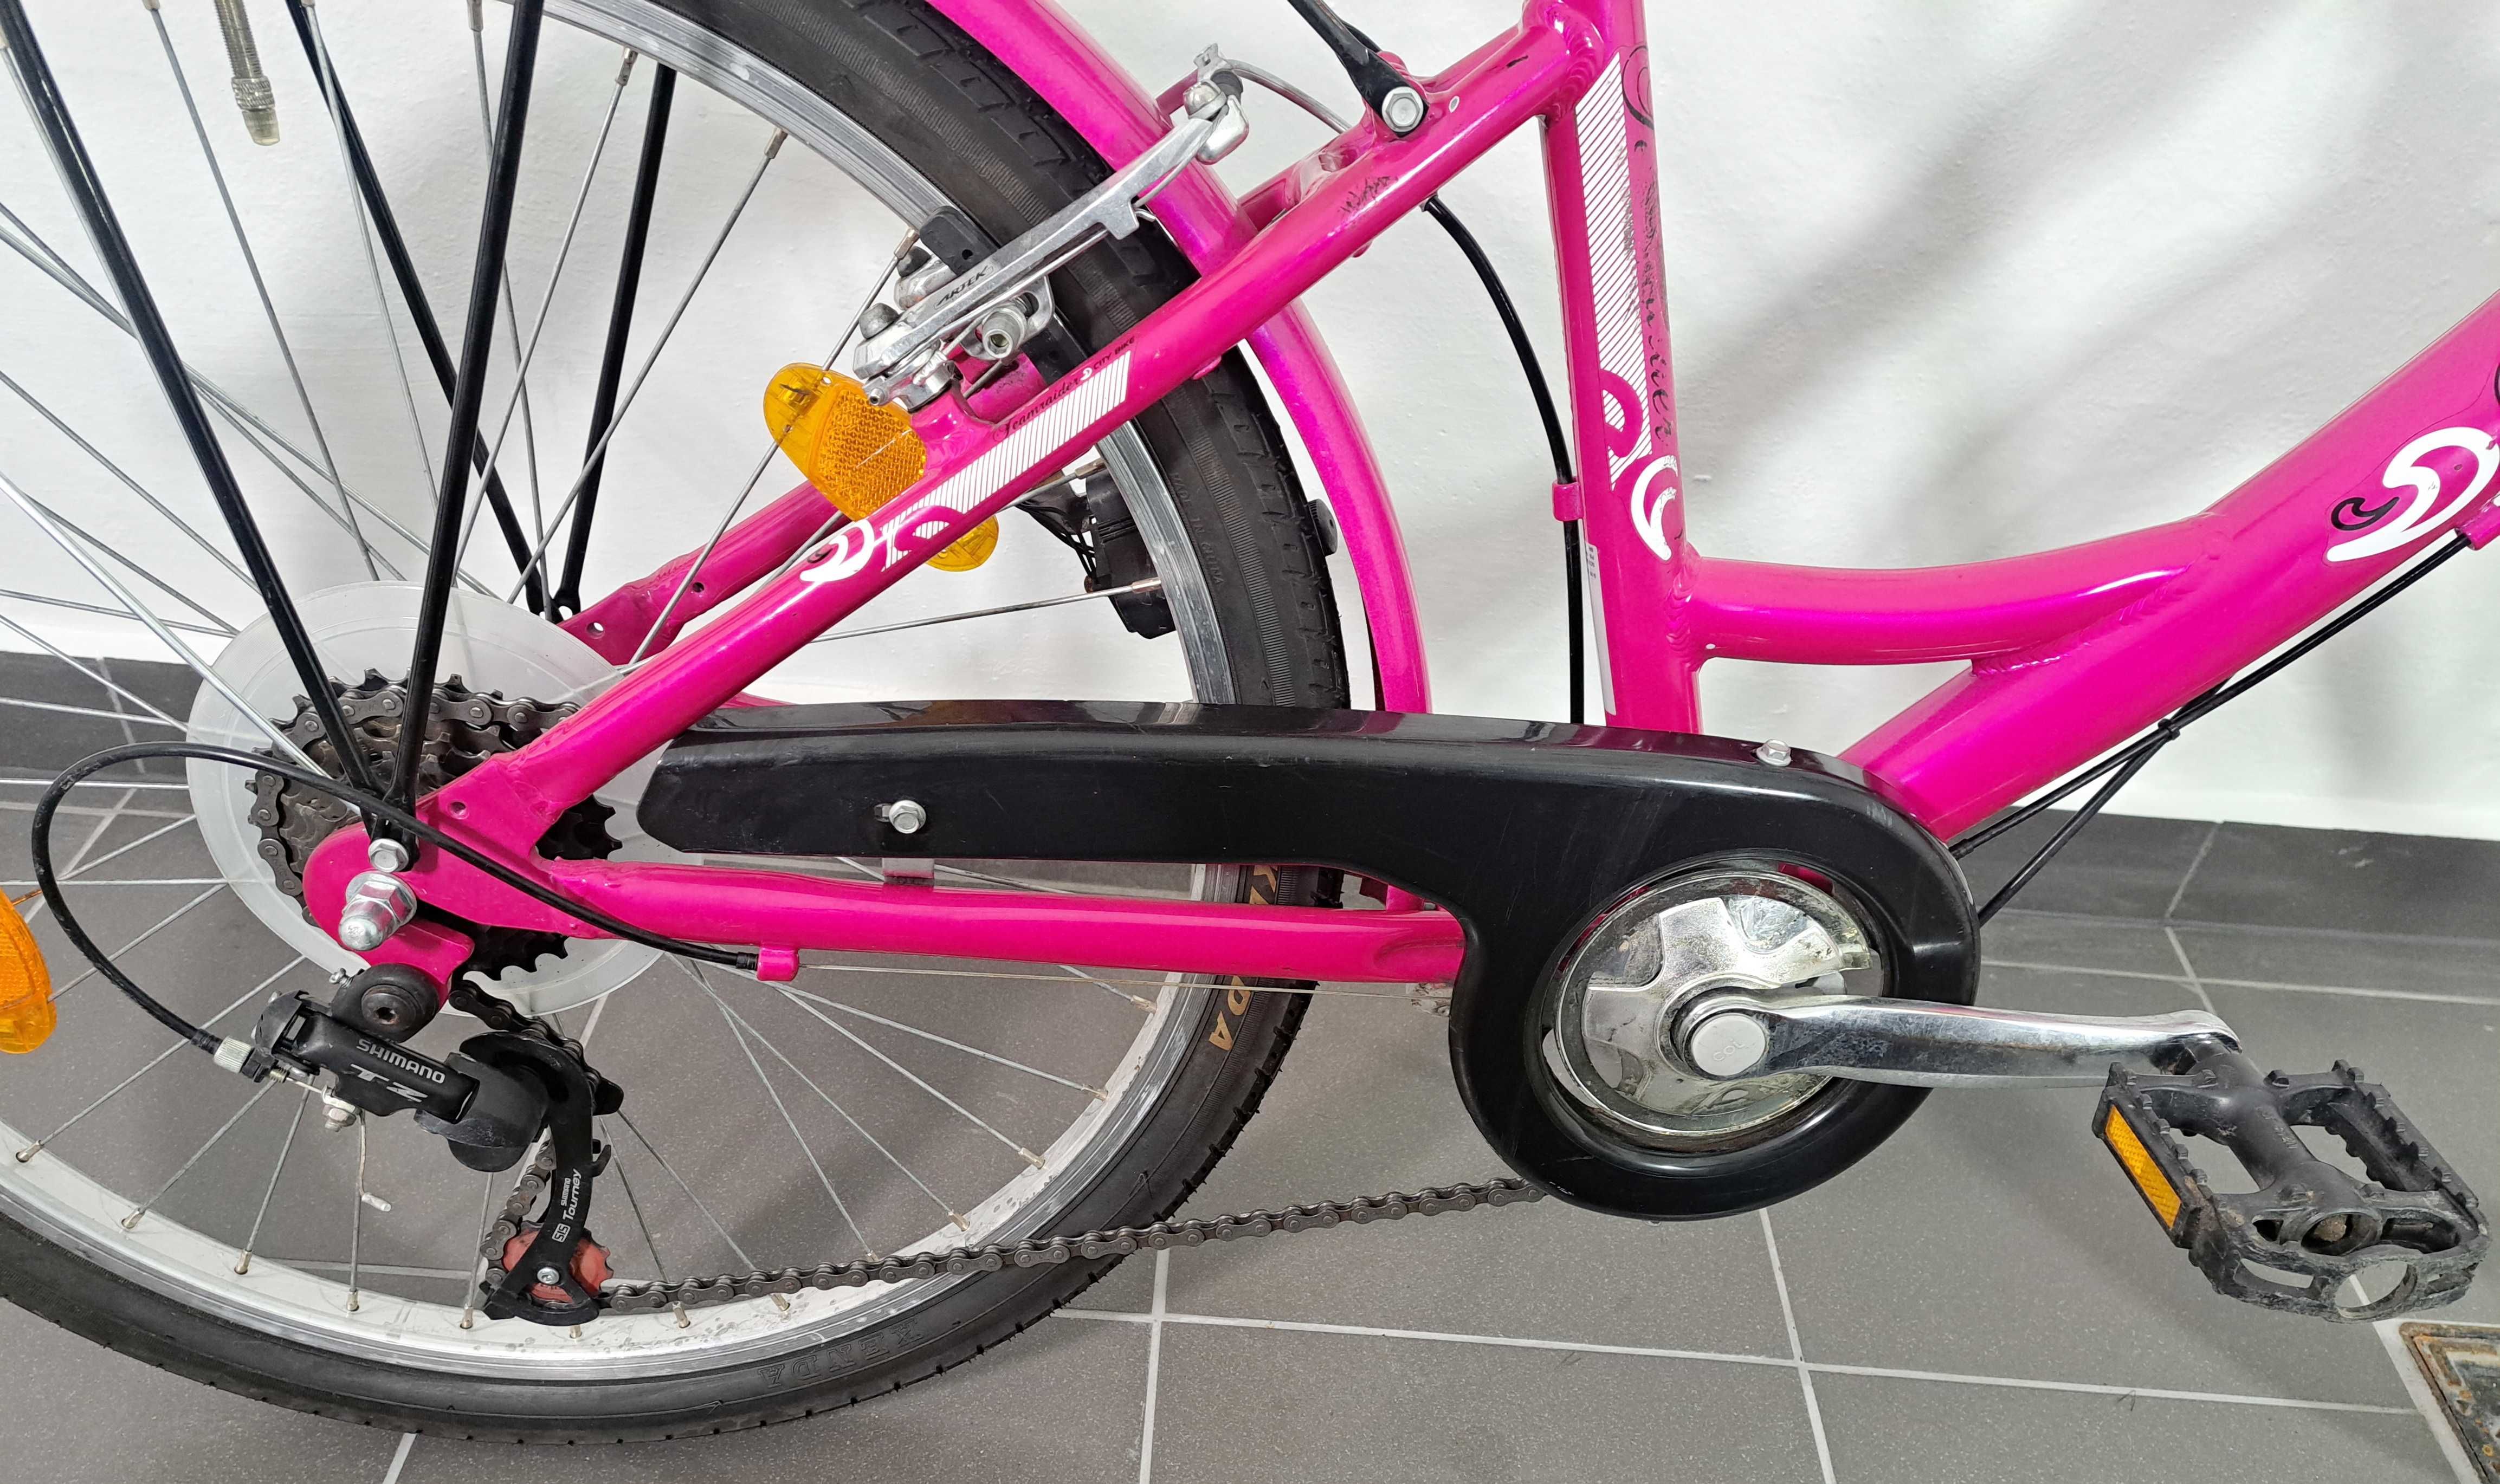 Rower rowerek dziecinny dla dziecka dziewczynki 24 cale super stan!!!